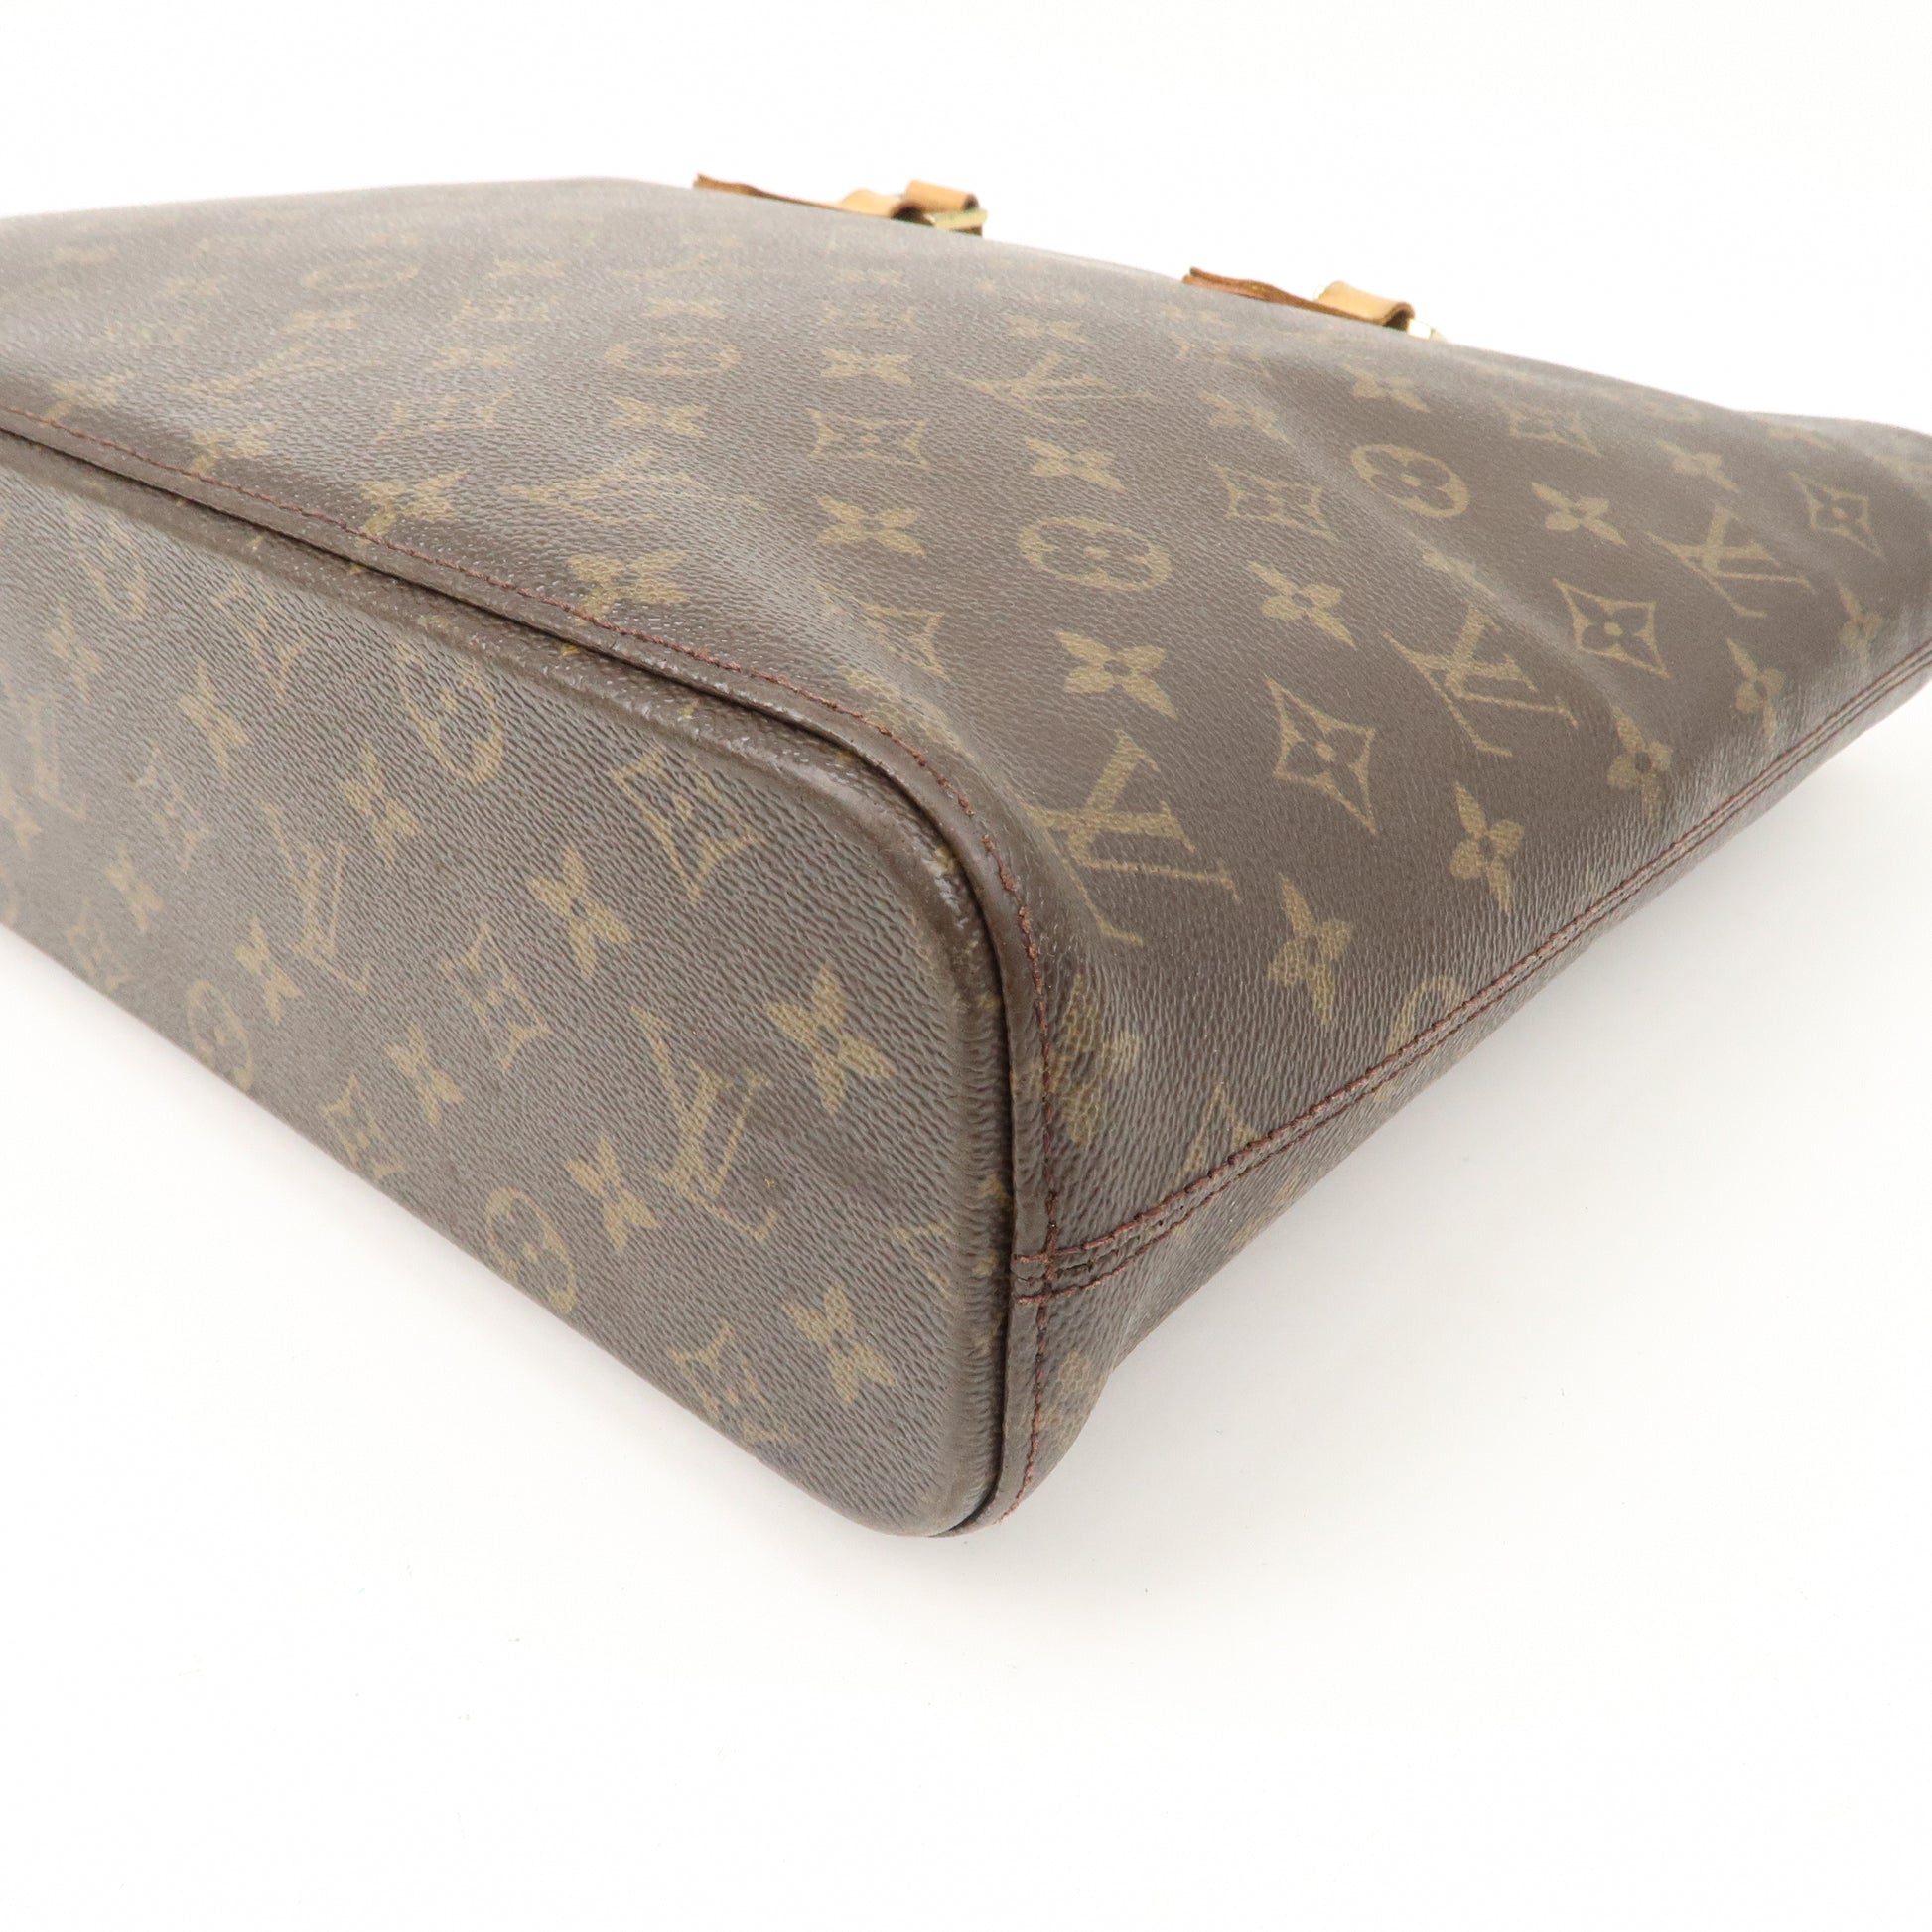 Louis Vuitton, Bags, Authentic Louis Vuitton Monogram Luco Tote Shoulder  Bag